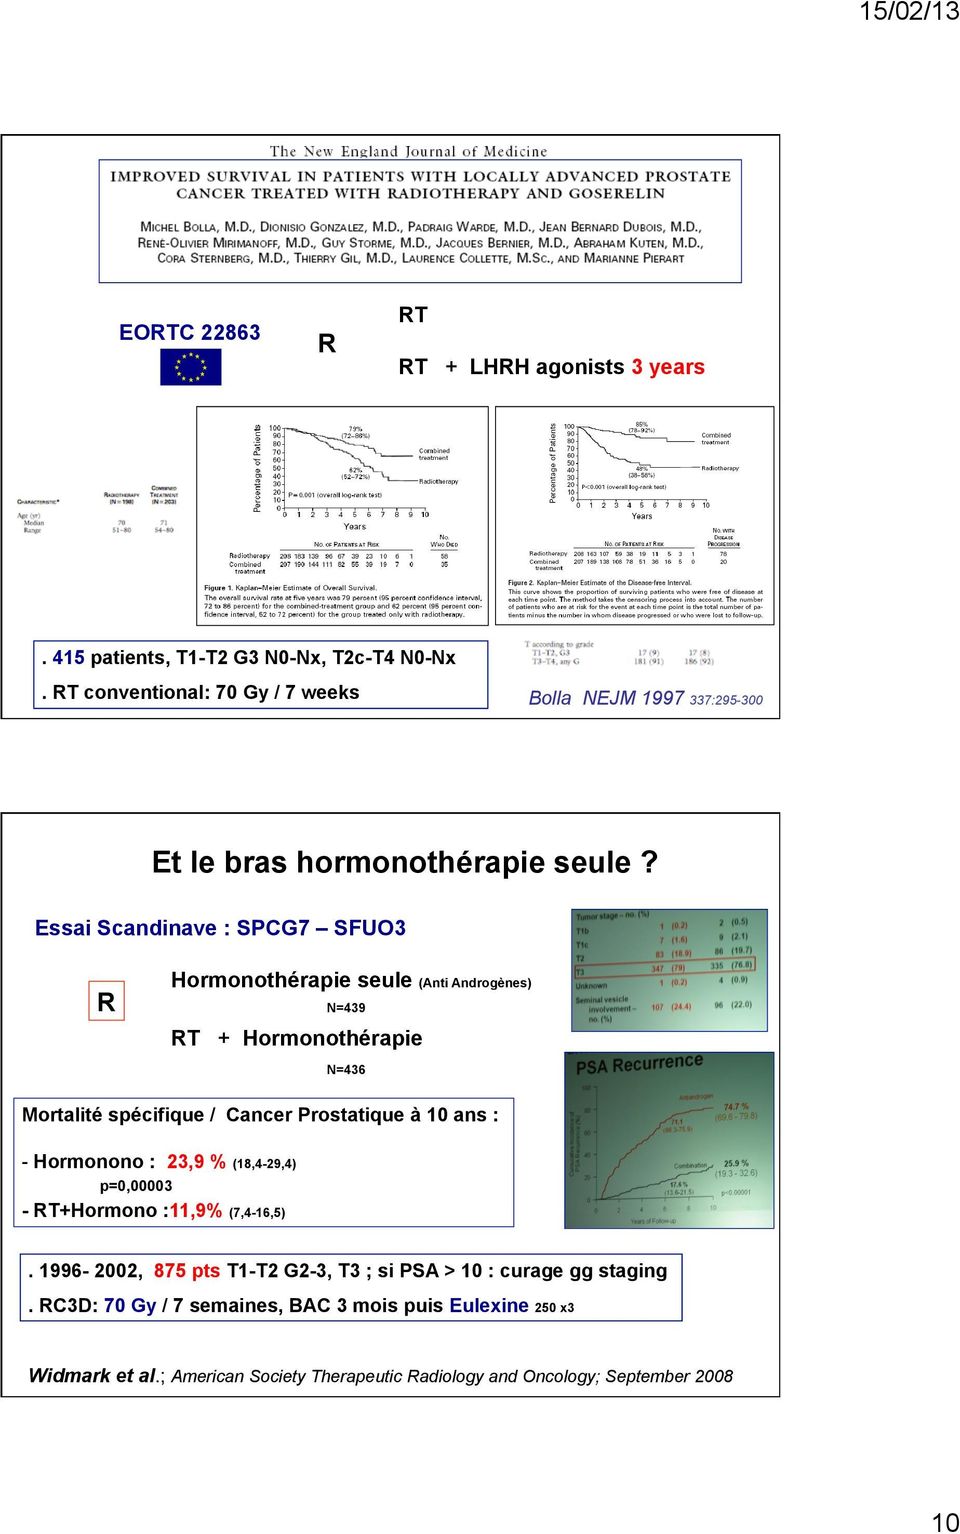 Essai Scandinave : SPCG7 SFUO3 R Hormonothérapie seule (Anti Androgènes) N=439 RT + Hormonothérapie N=436 Mortalité spécifique / Cancer Prostatique à 10 ans :